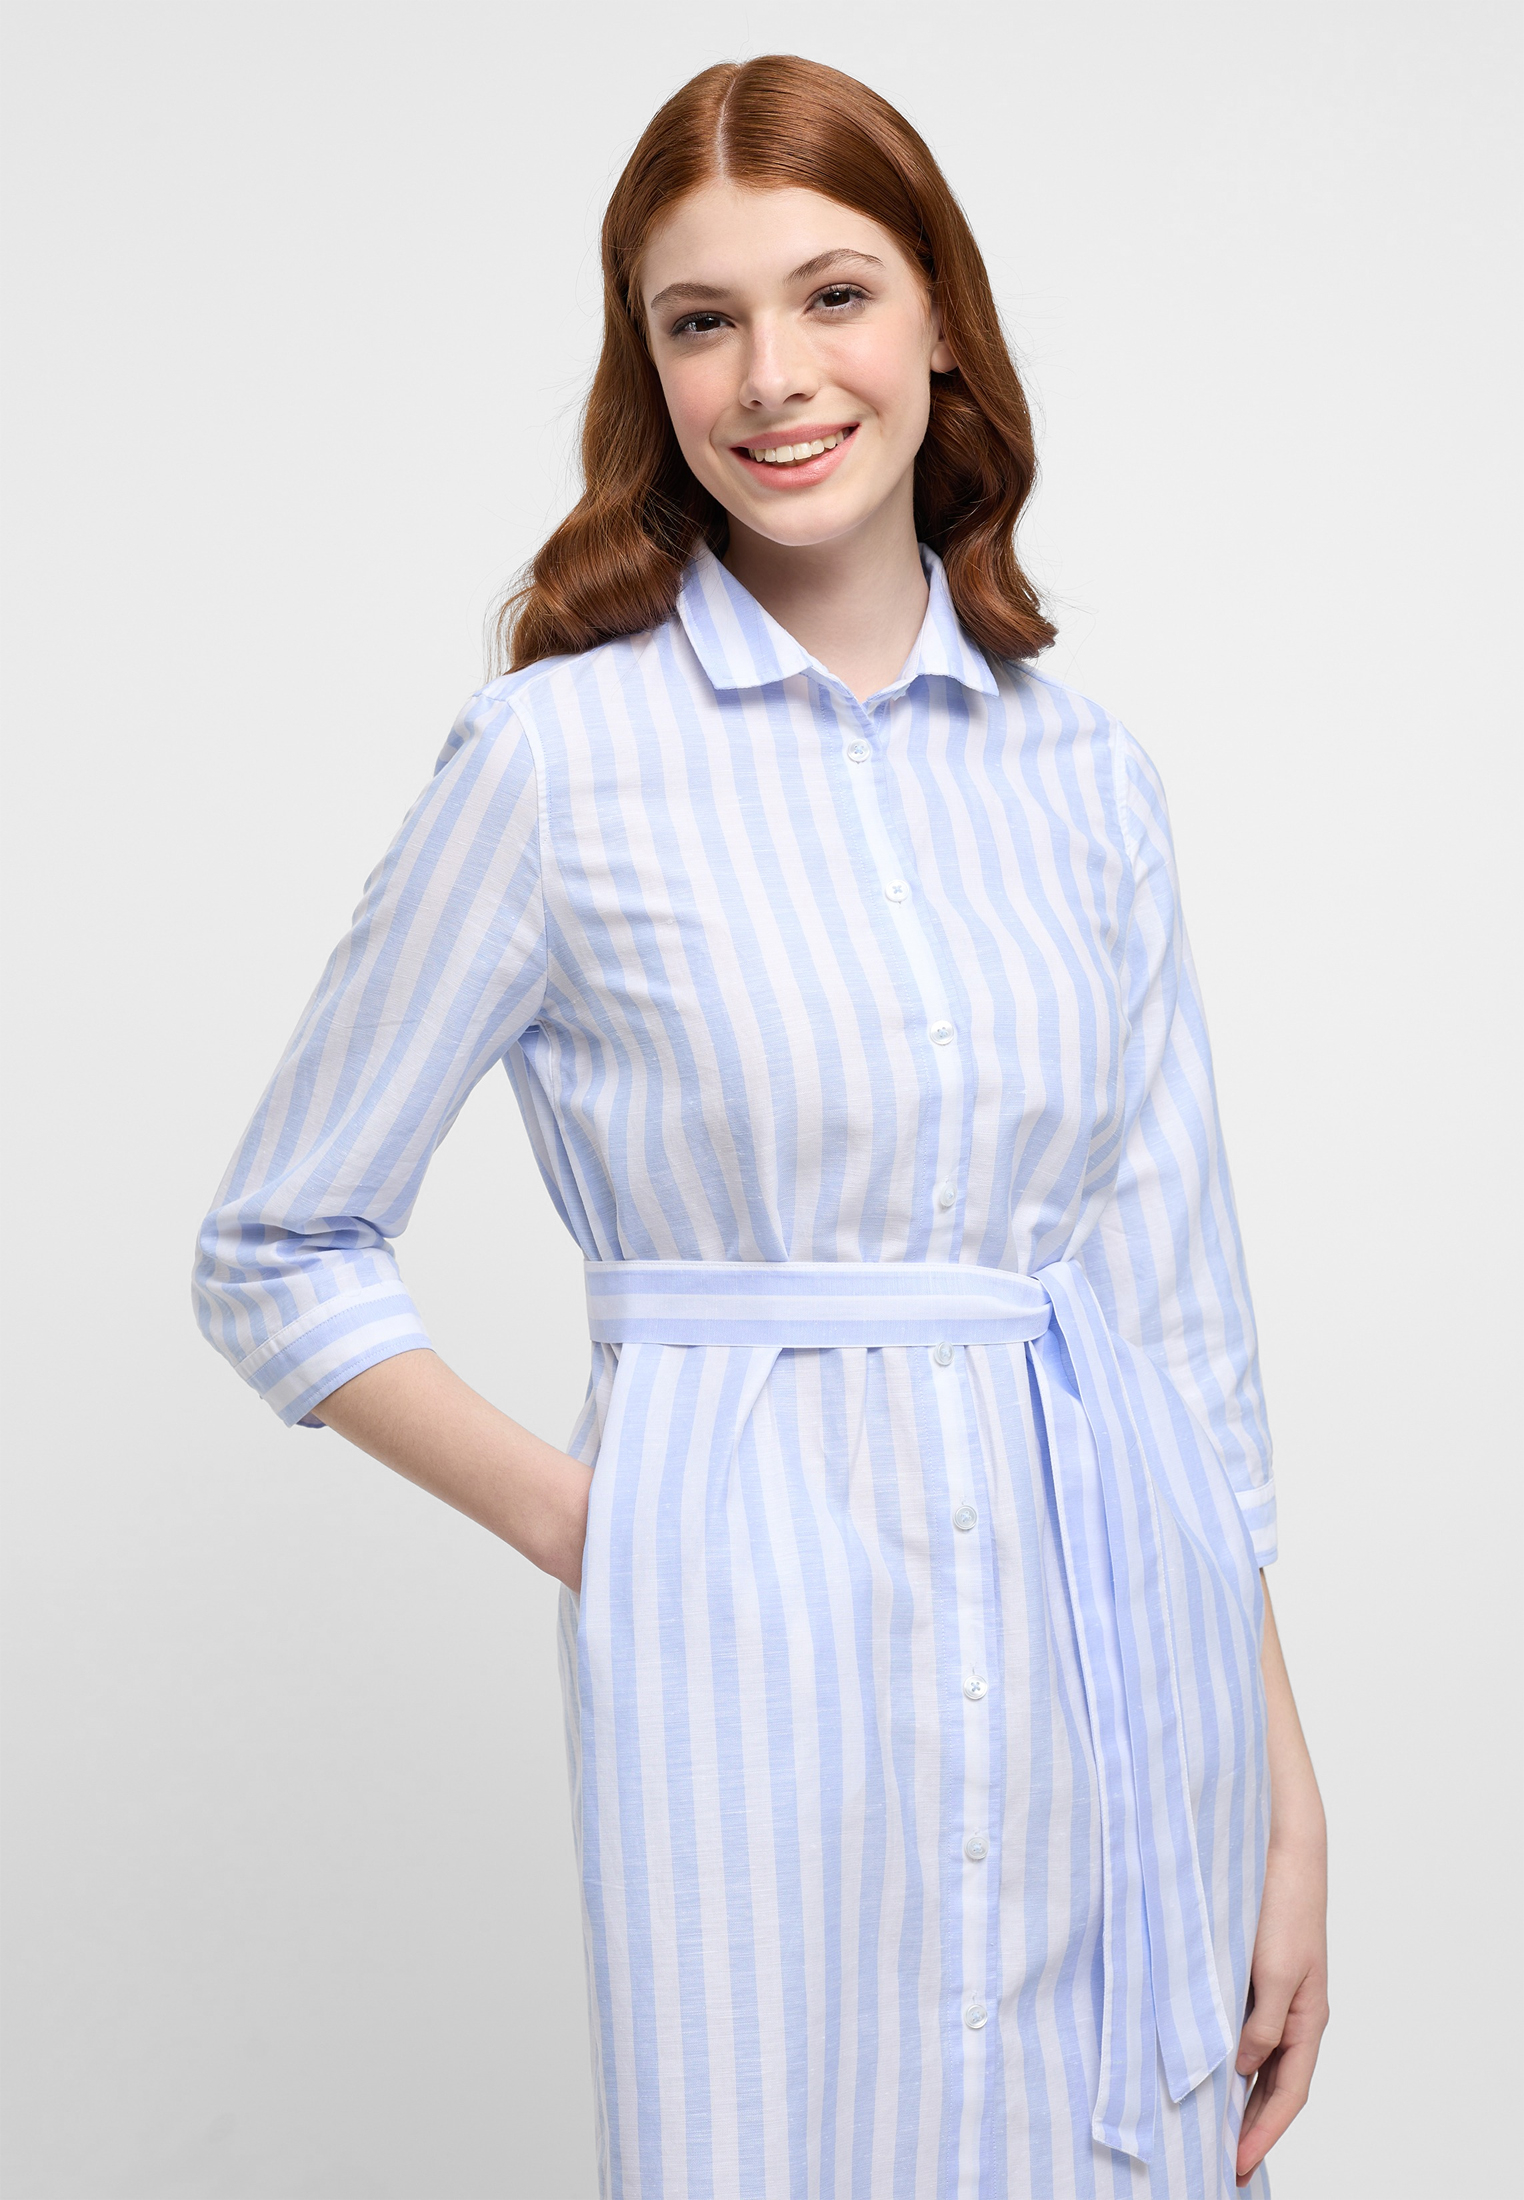 Hemdblusenkleid in light blue | light | | sleeves 46 | 3/4 2DR00267-01-11-46-3/4 striped blue